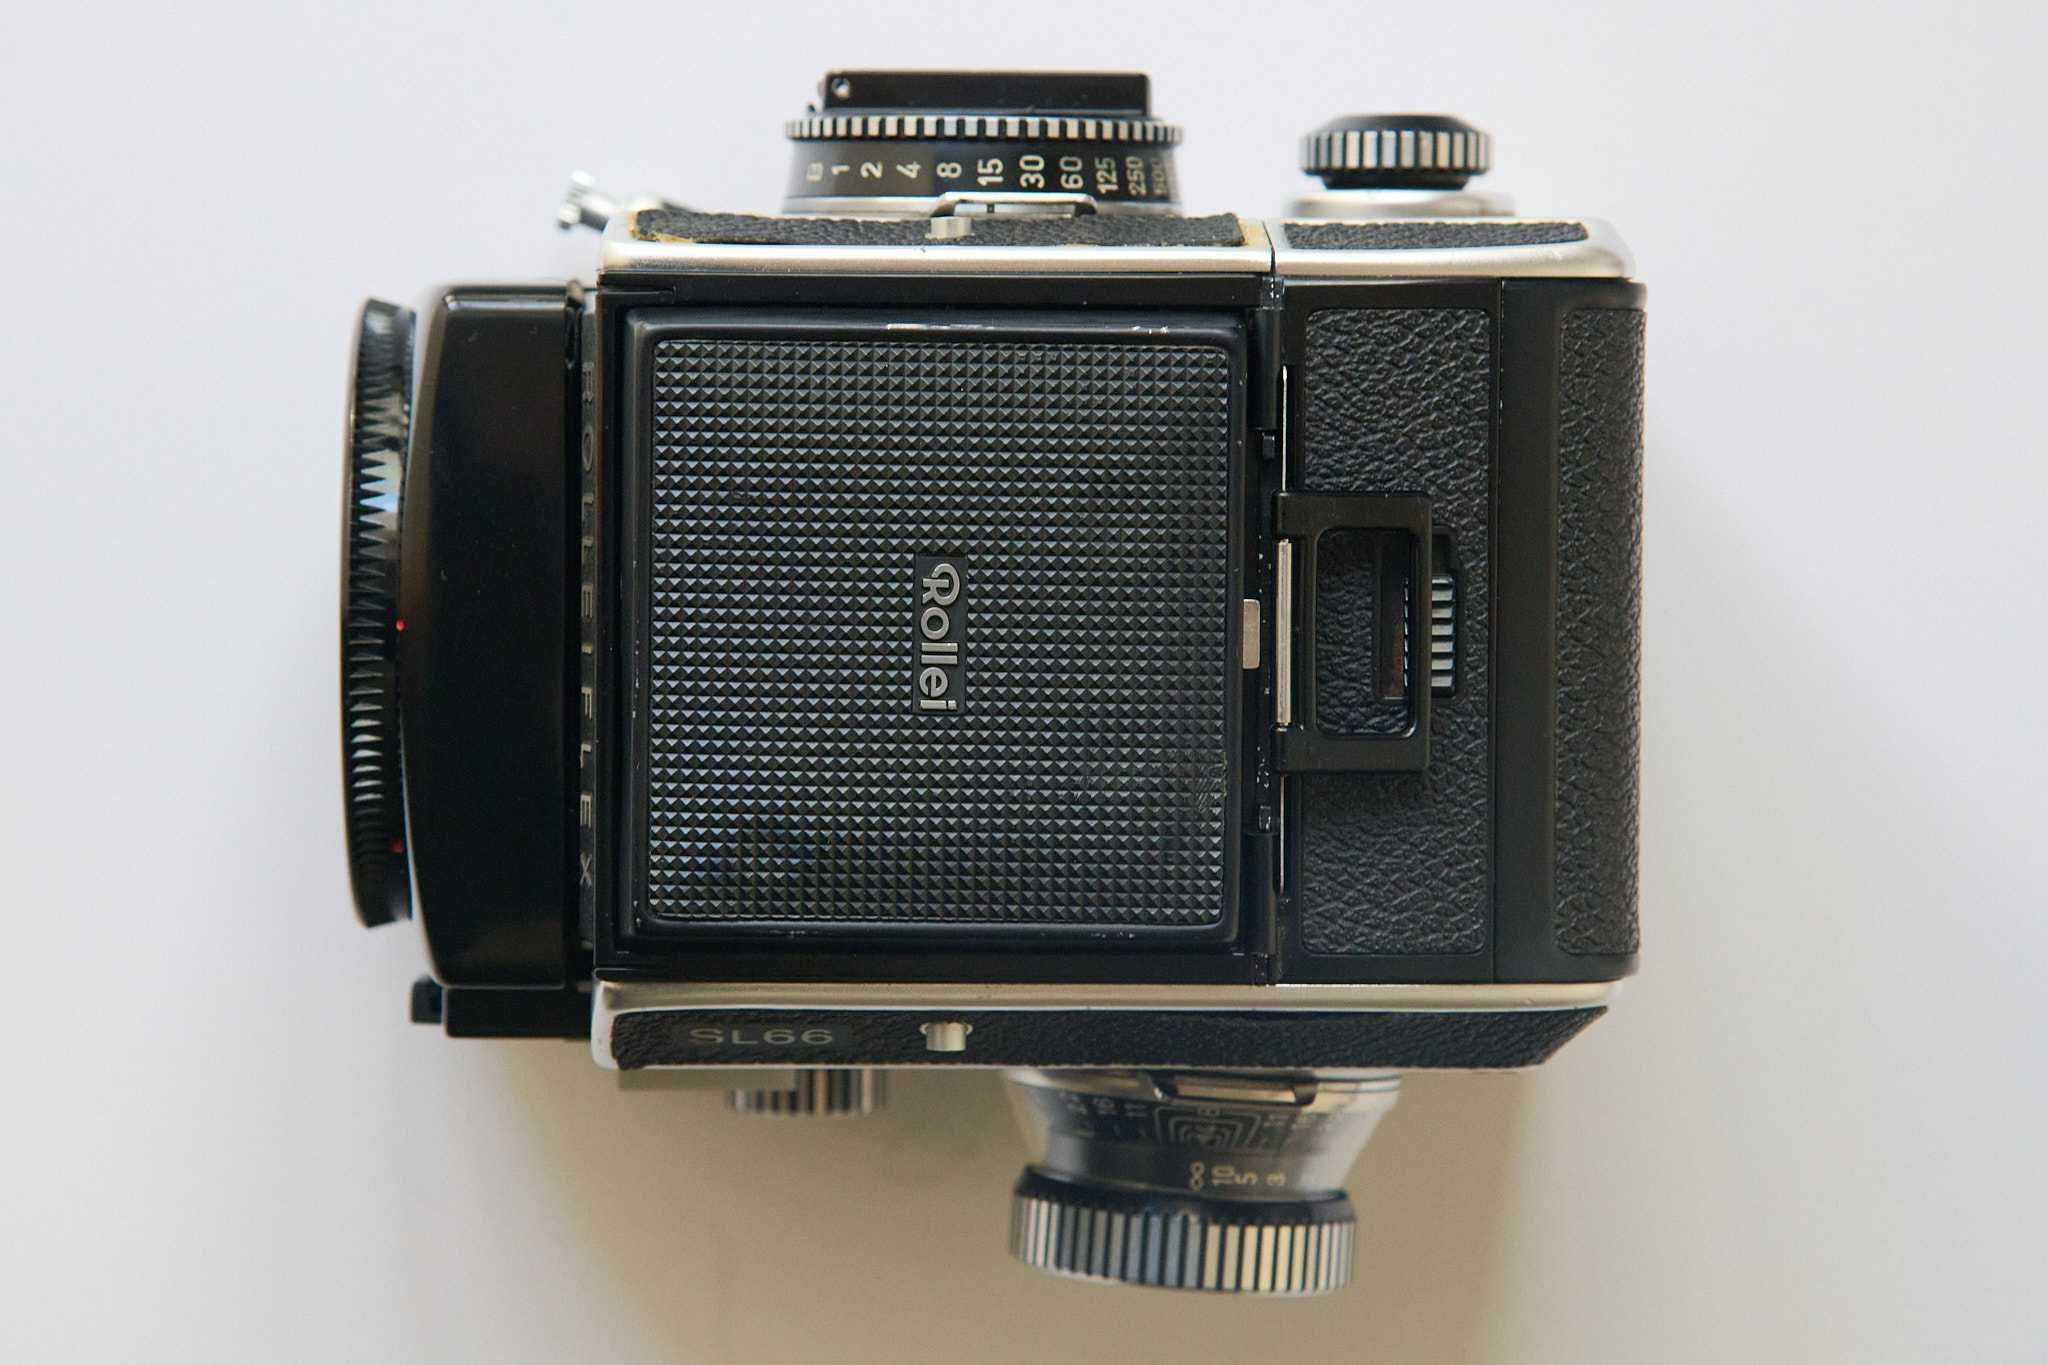 Rolleiflex SL66 with film holder 120/220 film